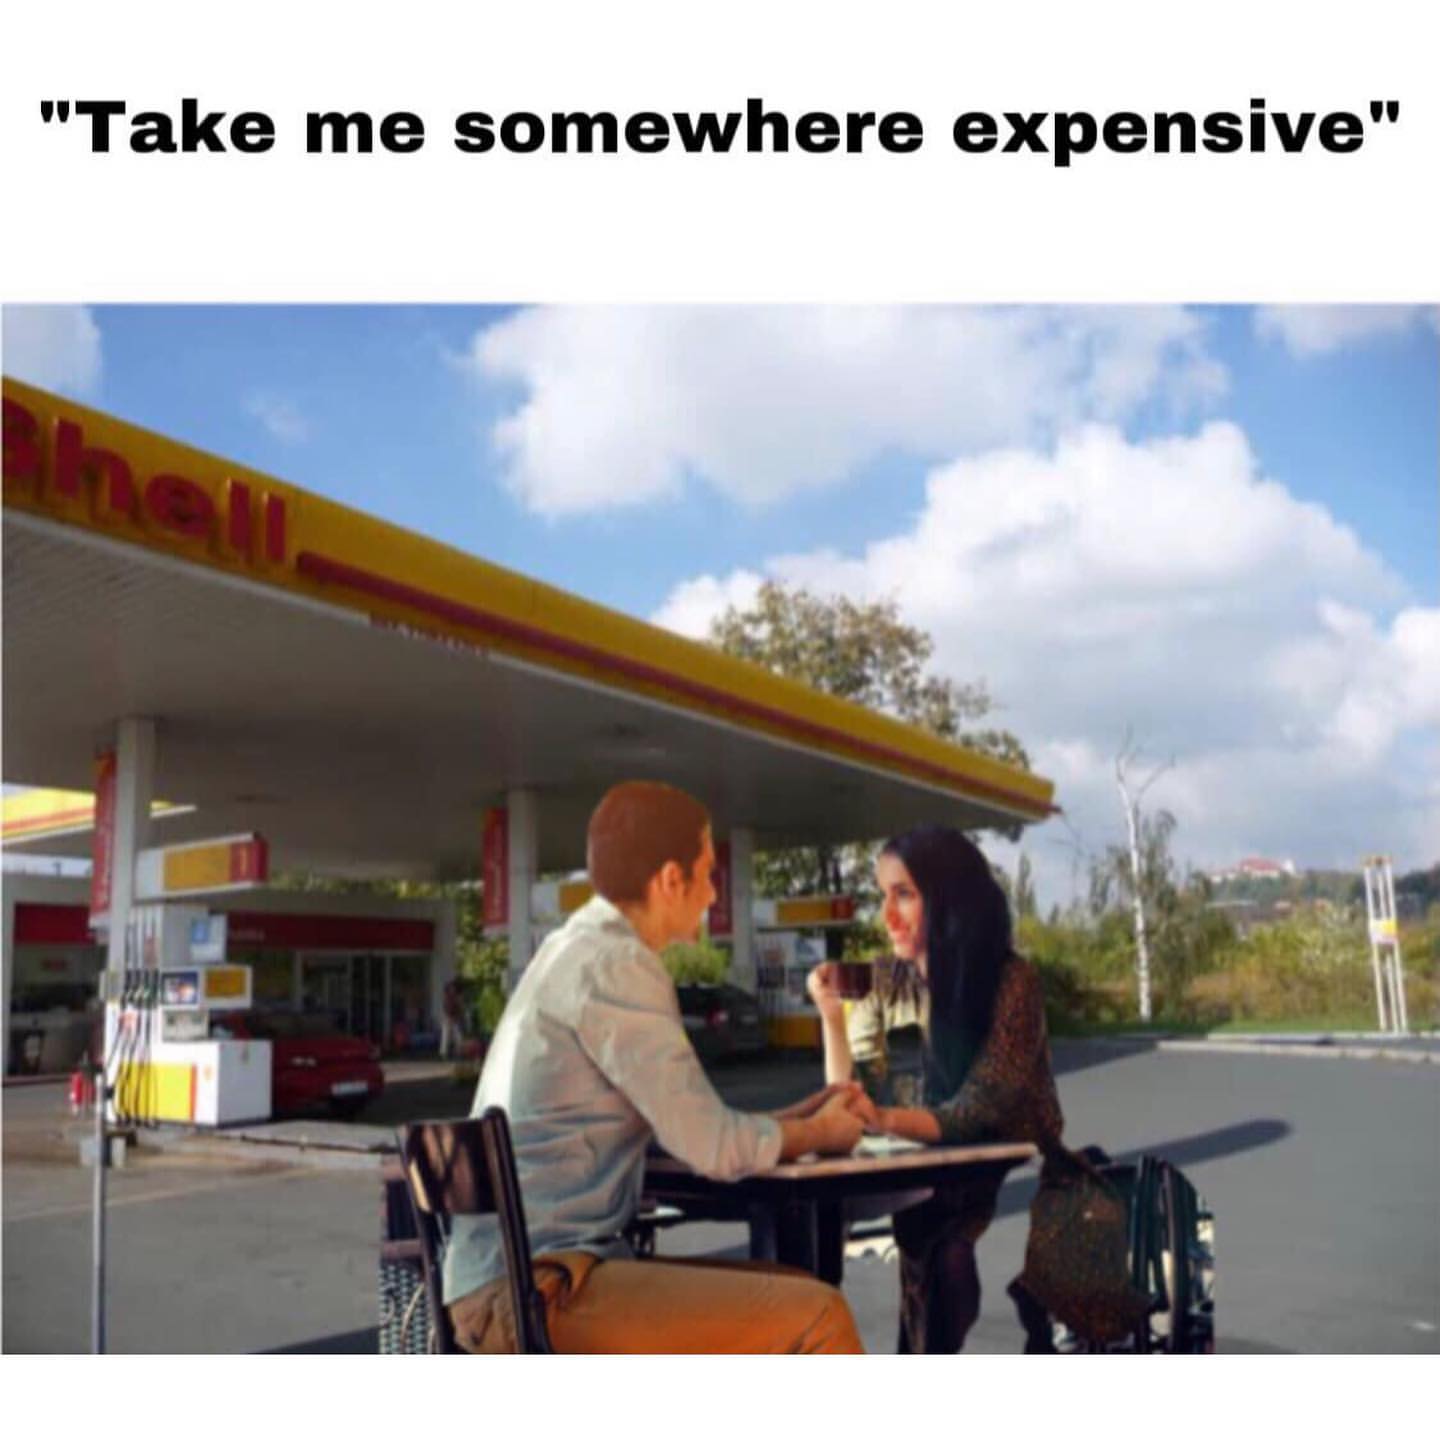 "Take me somewhere expensive".